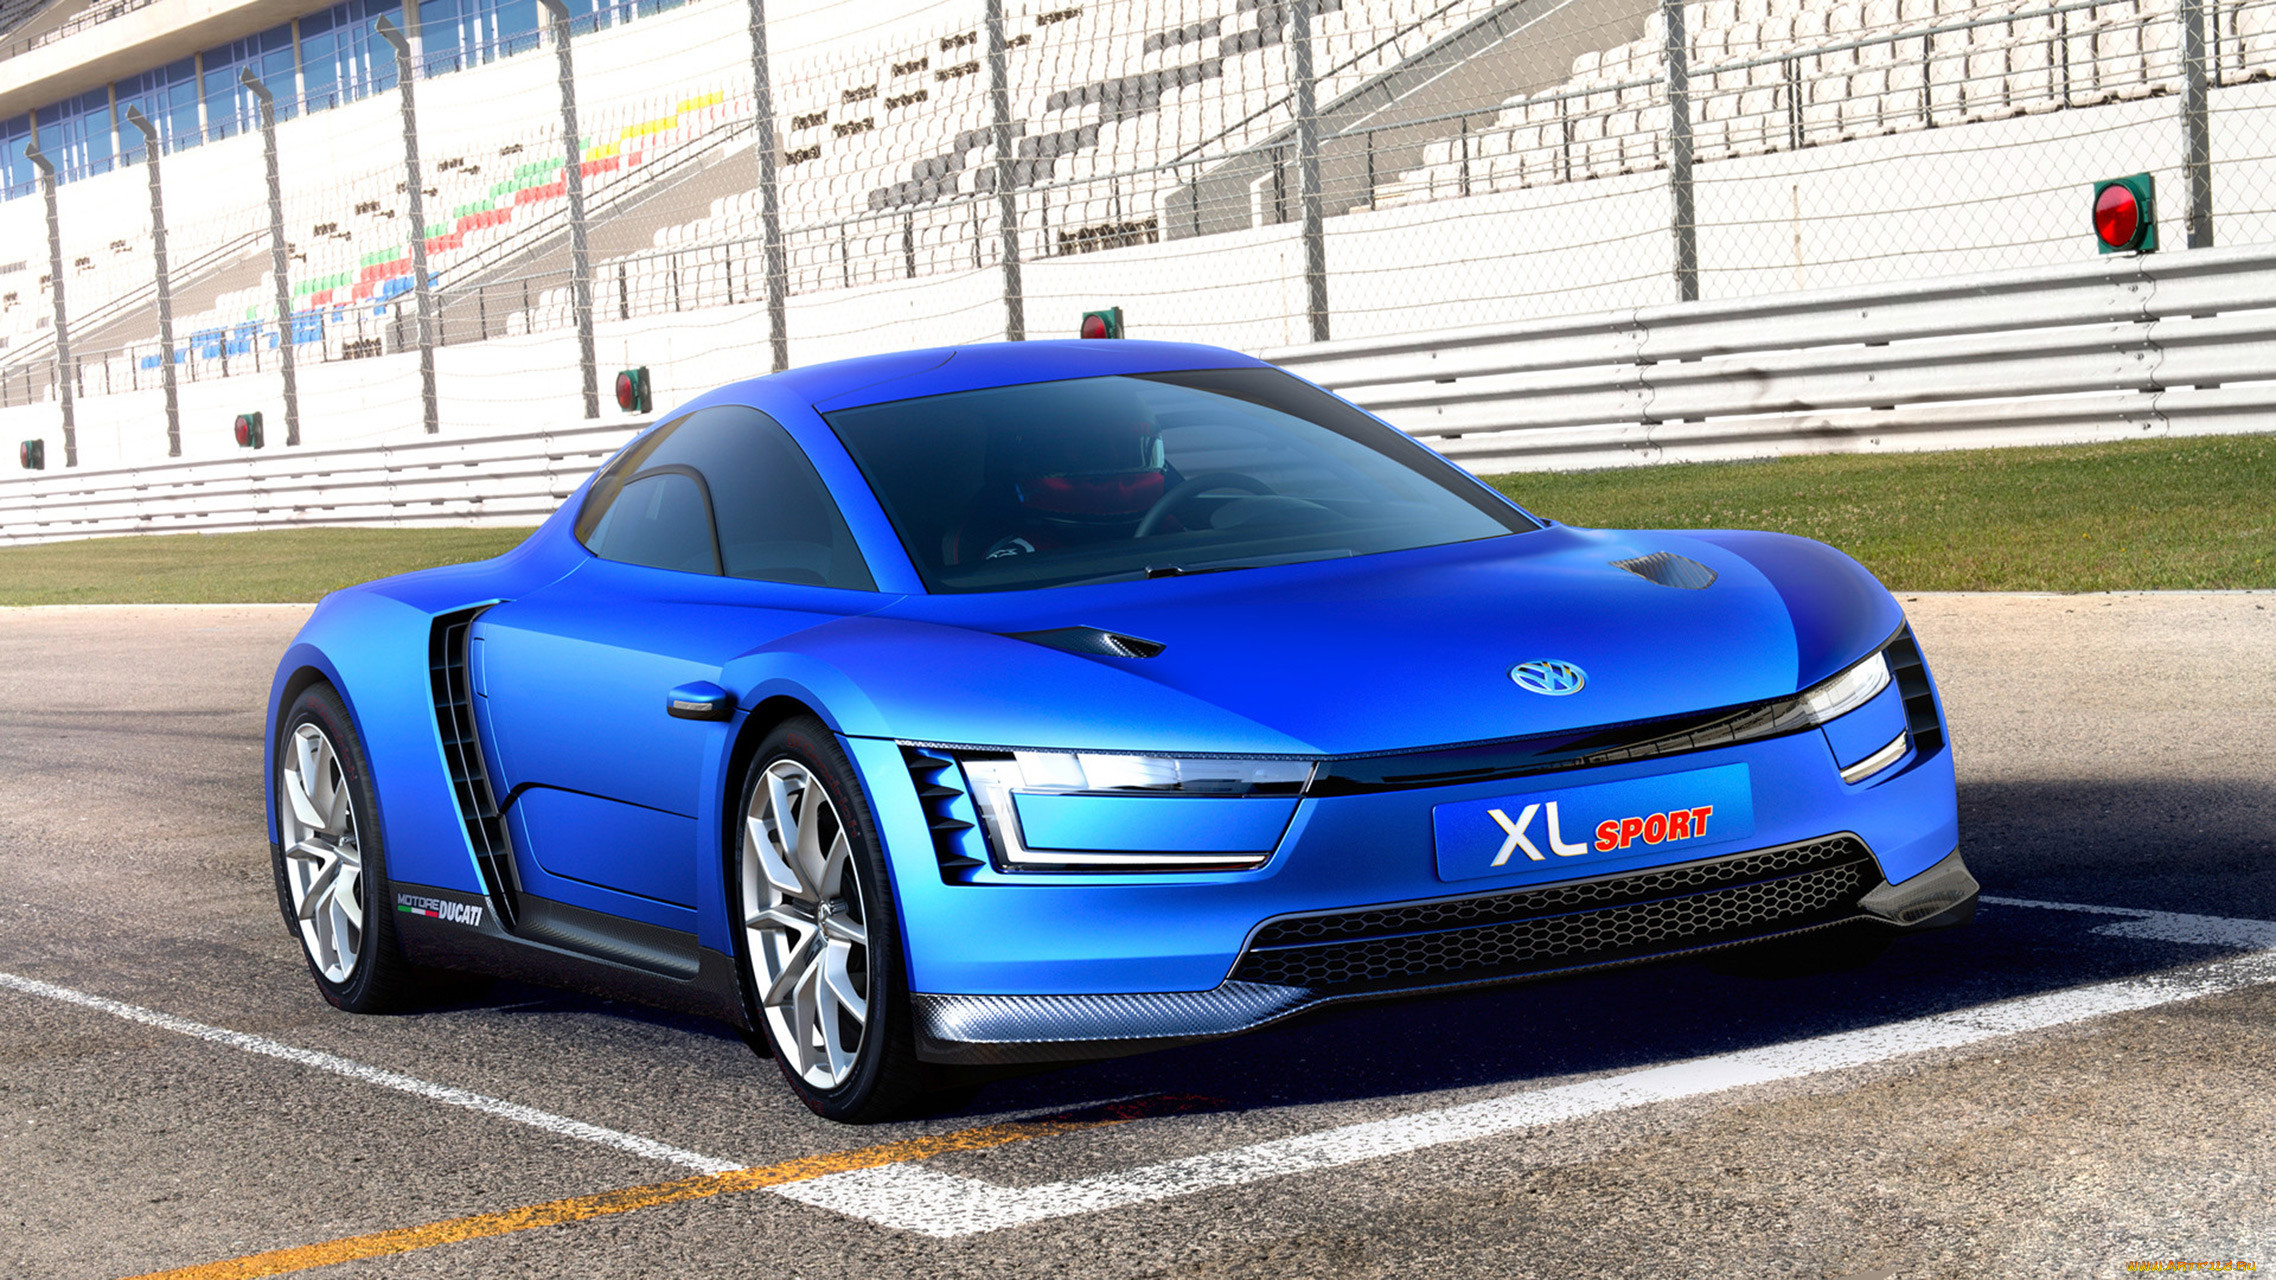 volkswagen xl sport concept 2014, , volkswagen, 2014, concept, sport, xl